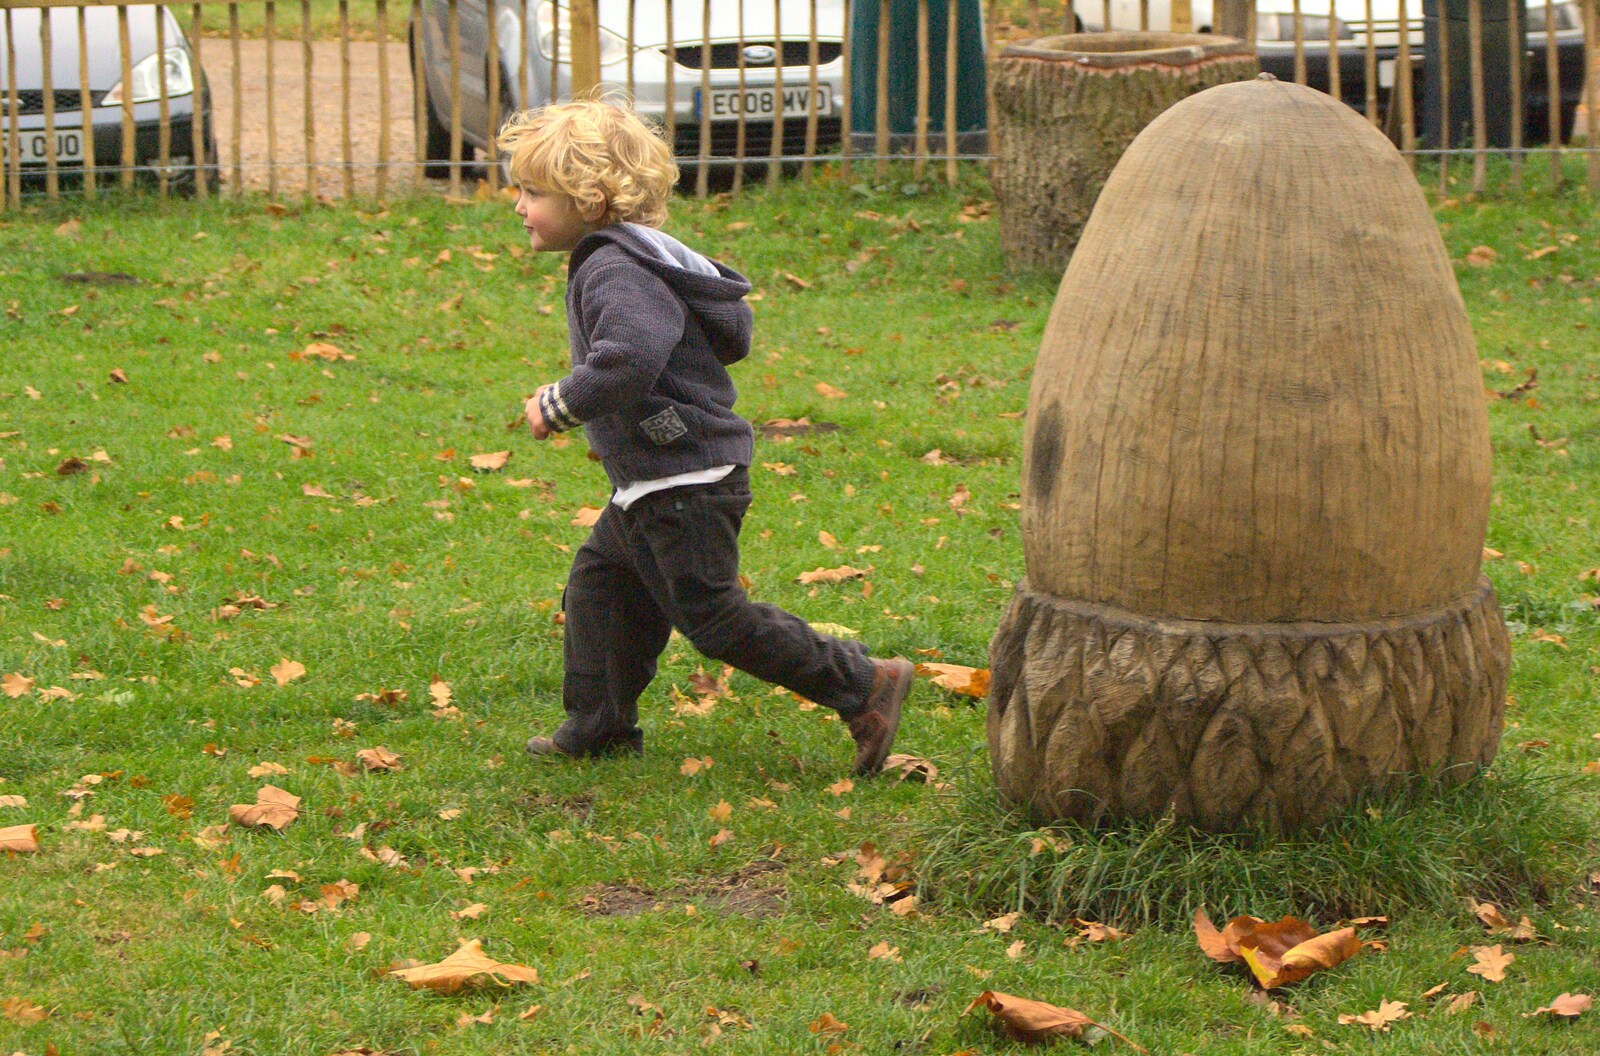 Fred legs it from Autumn in Thornham Estate, Thornham, Suffolk - 6th November 2011